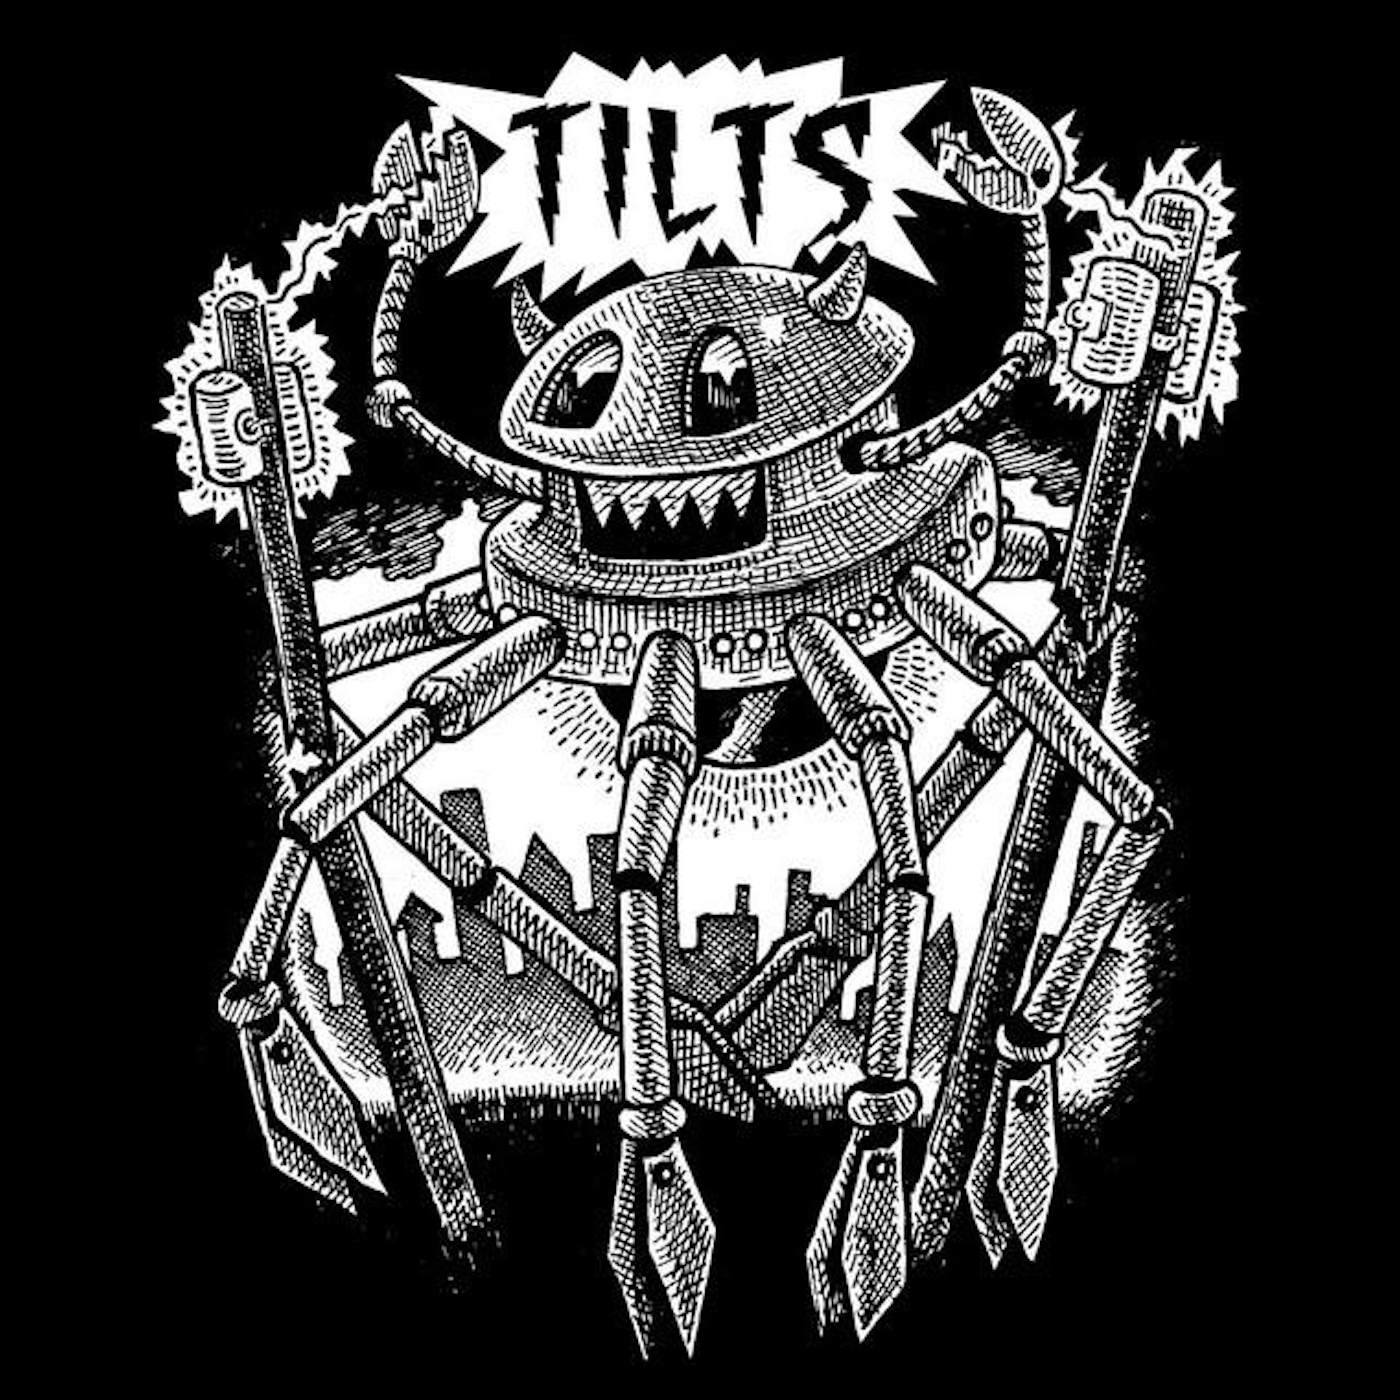 Tilts